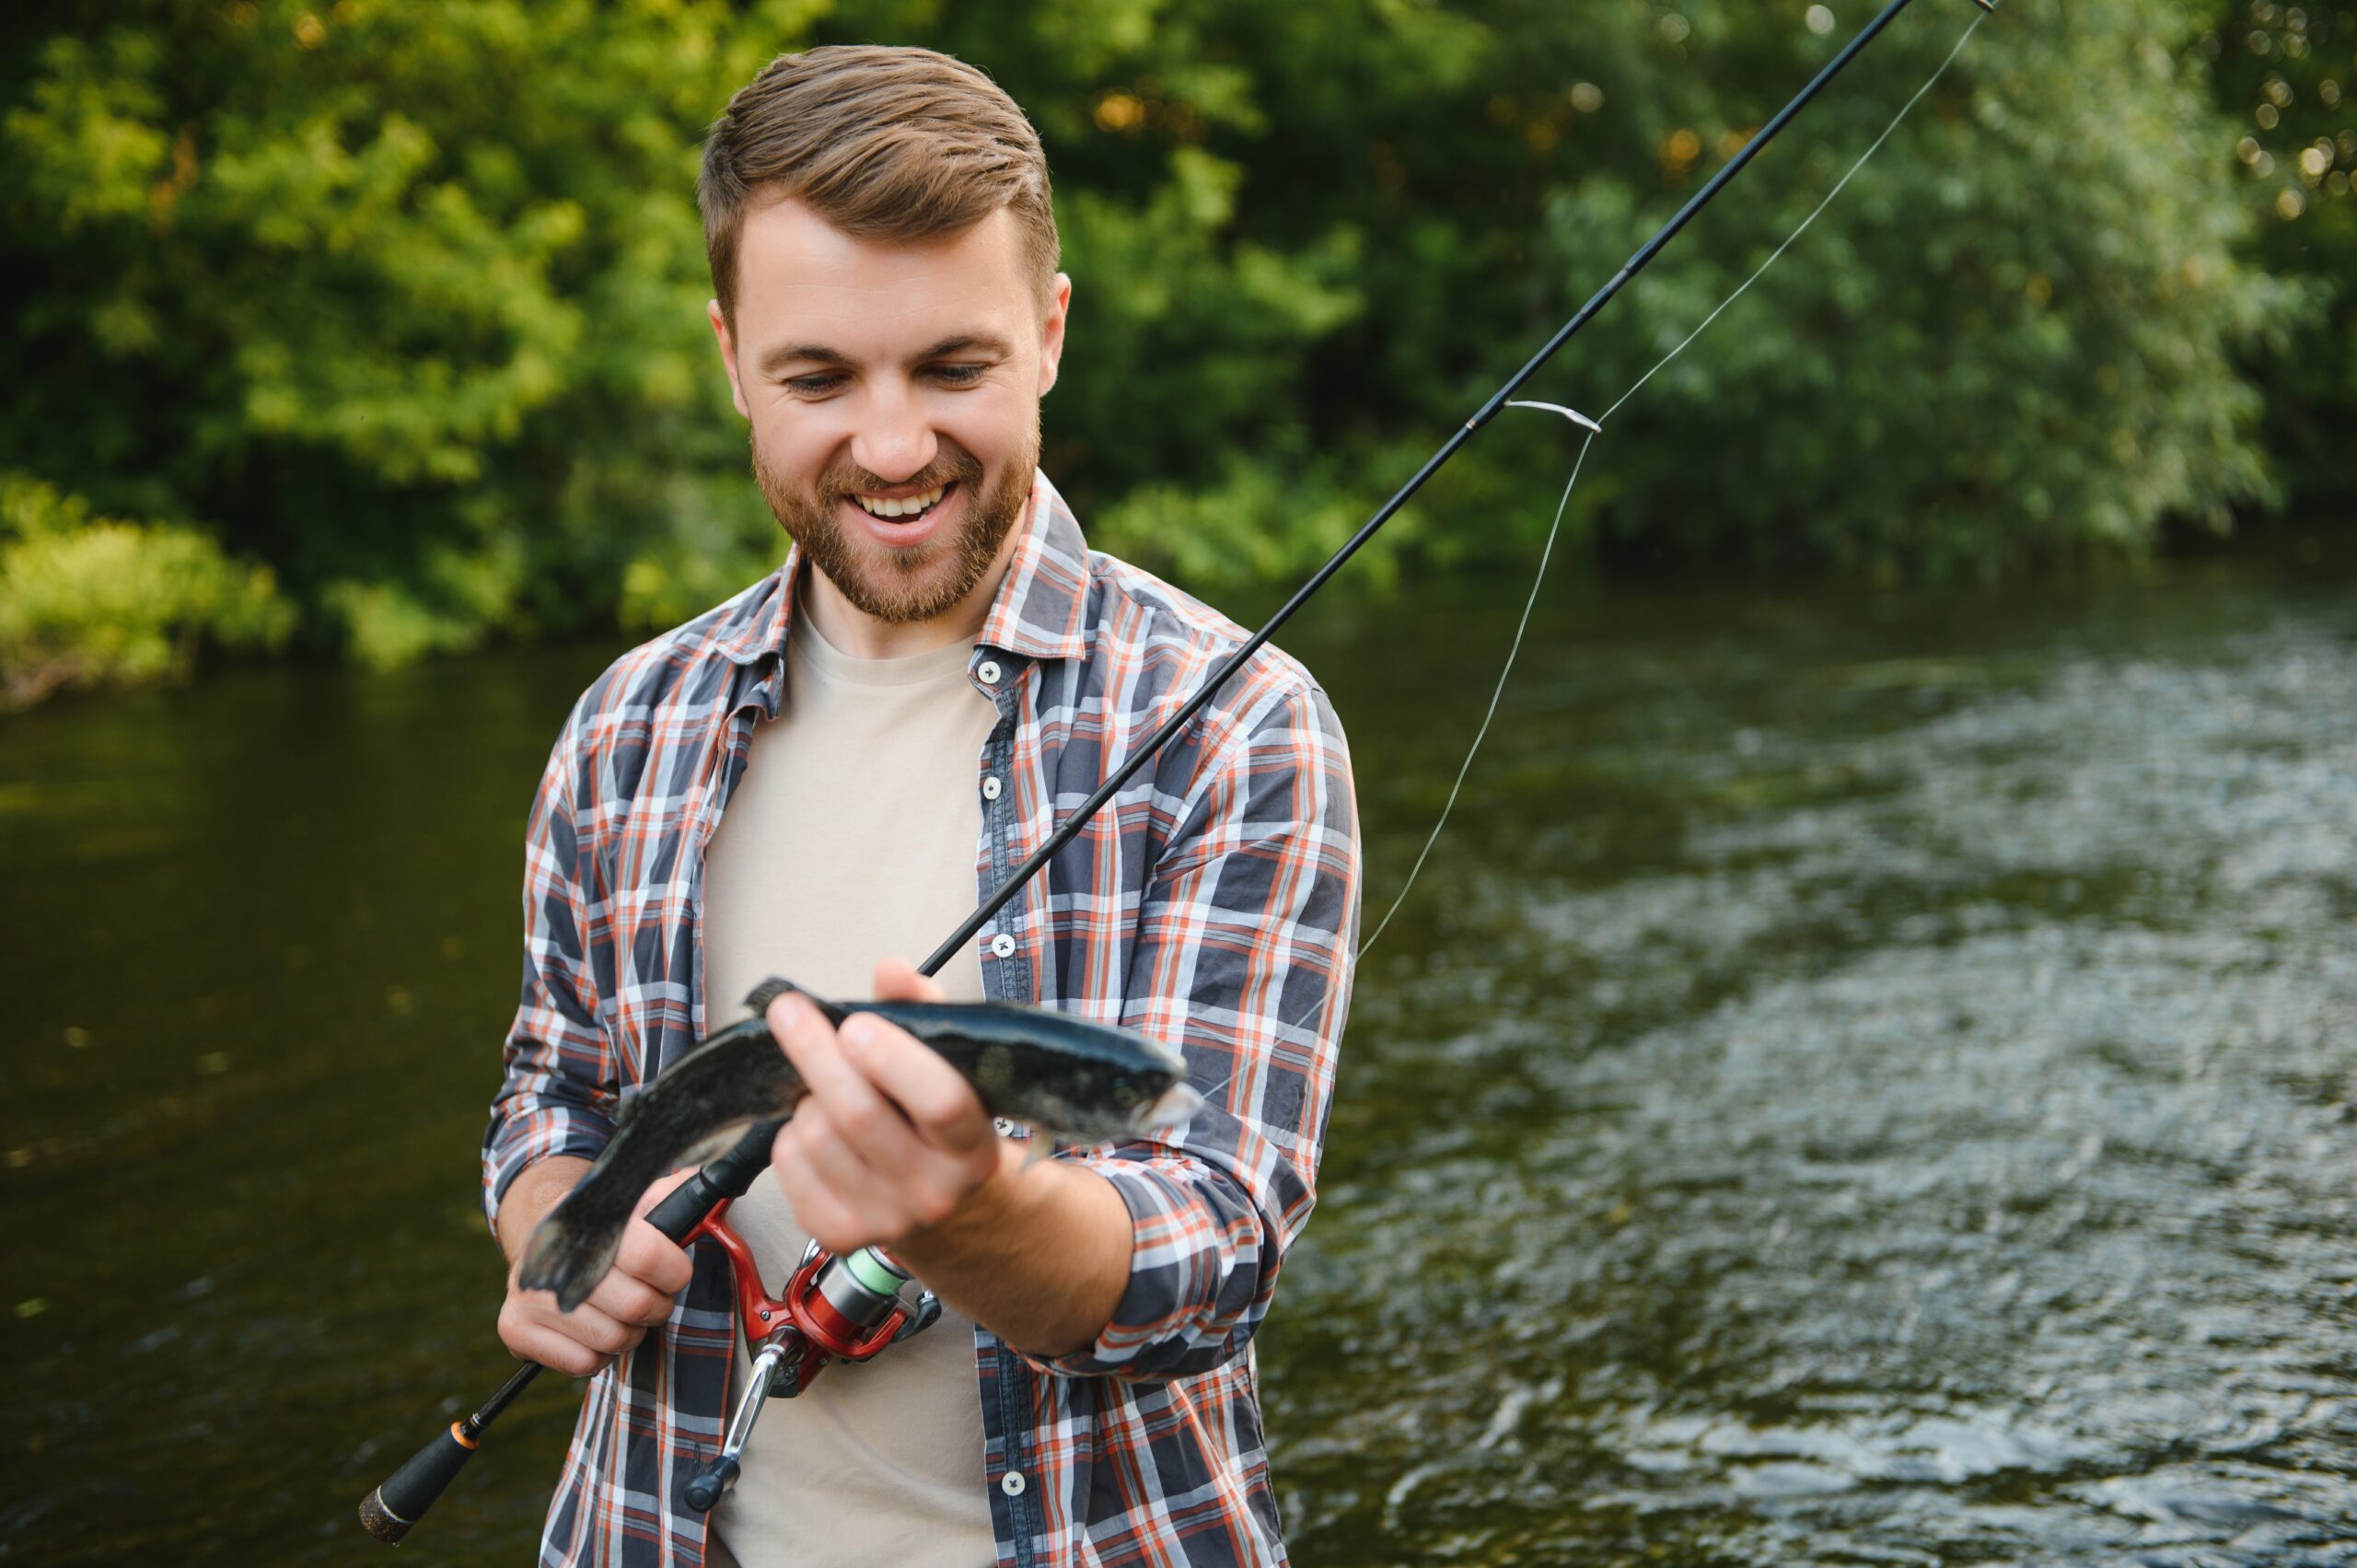 fanatic4fishing.com : Why buy an expensive fishing rod?